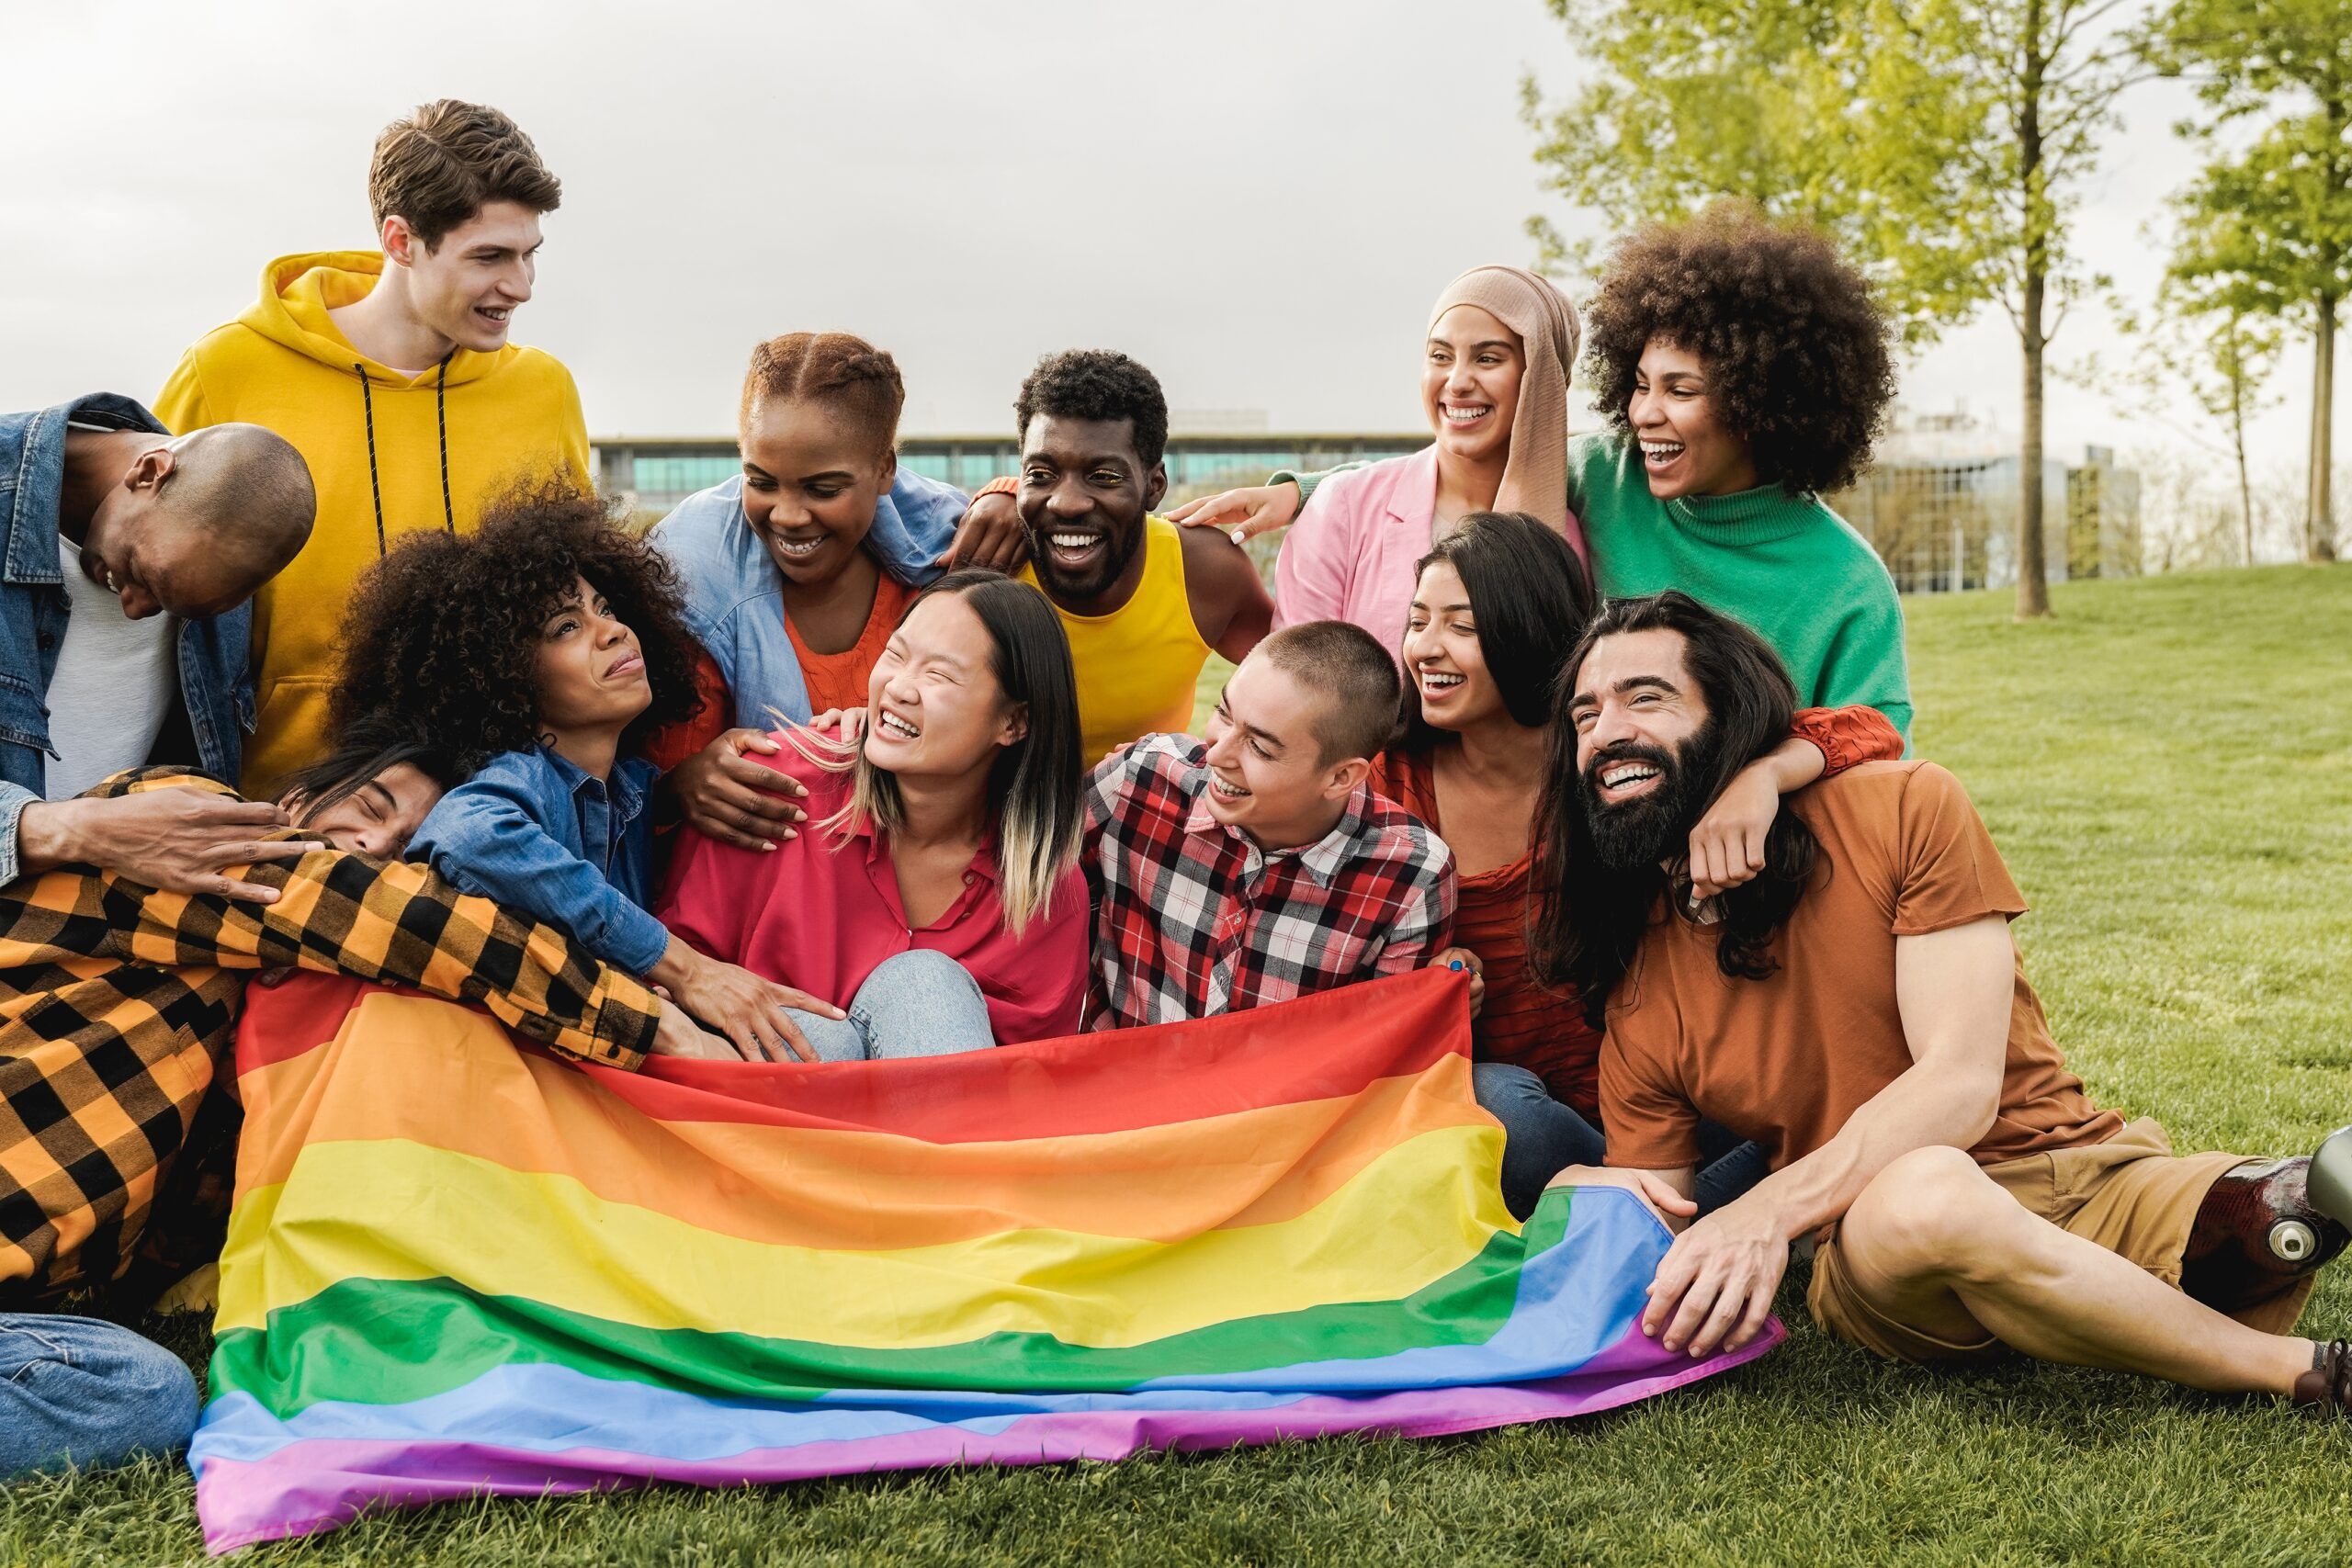 Stärkung der LGBTQ+-Jugend: Schaffung sicherer Räume für Wachstum und Akzeptanz